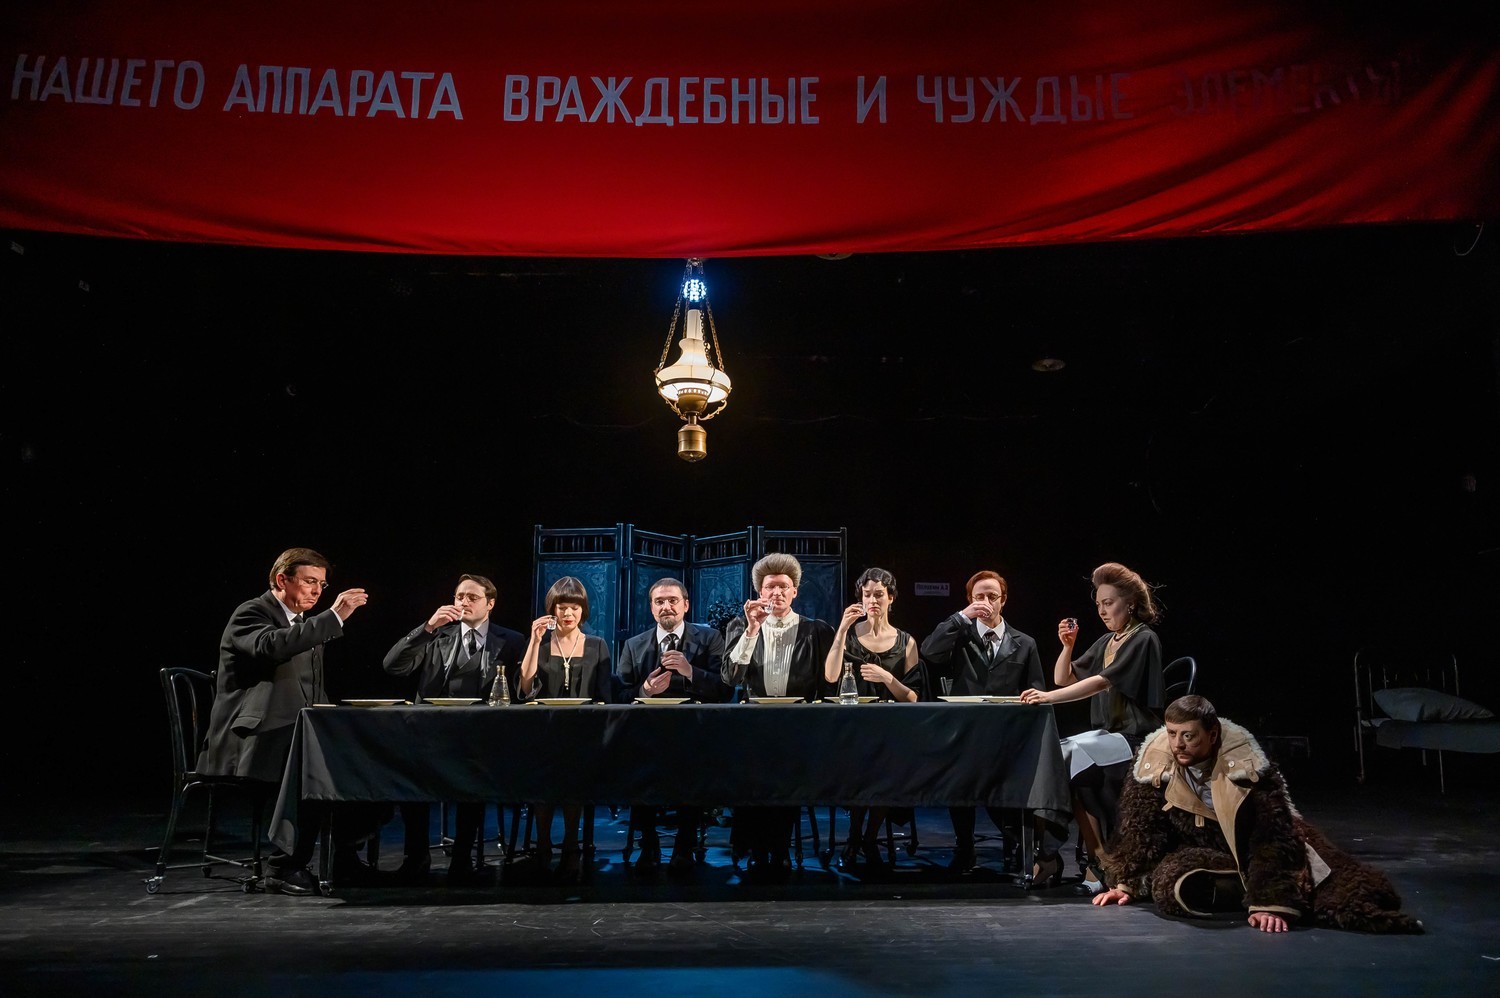 Aleksandrinski-teatterin vierailu alkaa tänään satiirisella esityksellä Toveri Kisljakov. Se esitetään Karjalan kansallisen teatterin näyttämöllä. (18+) Kuva: drampush.ru